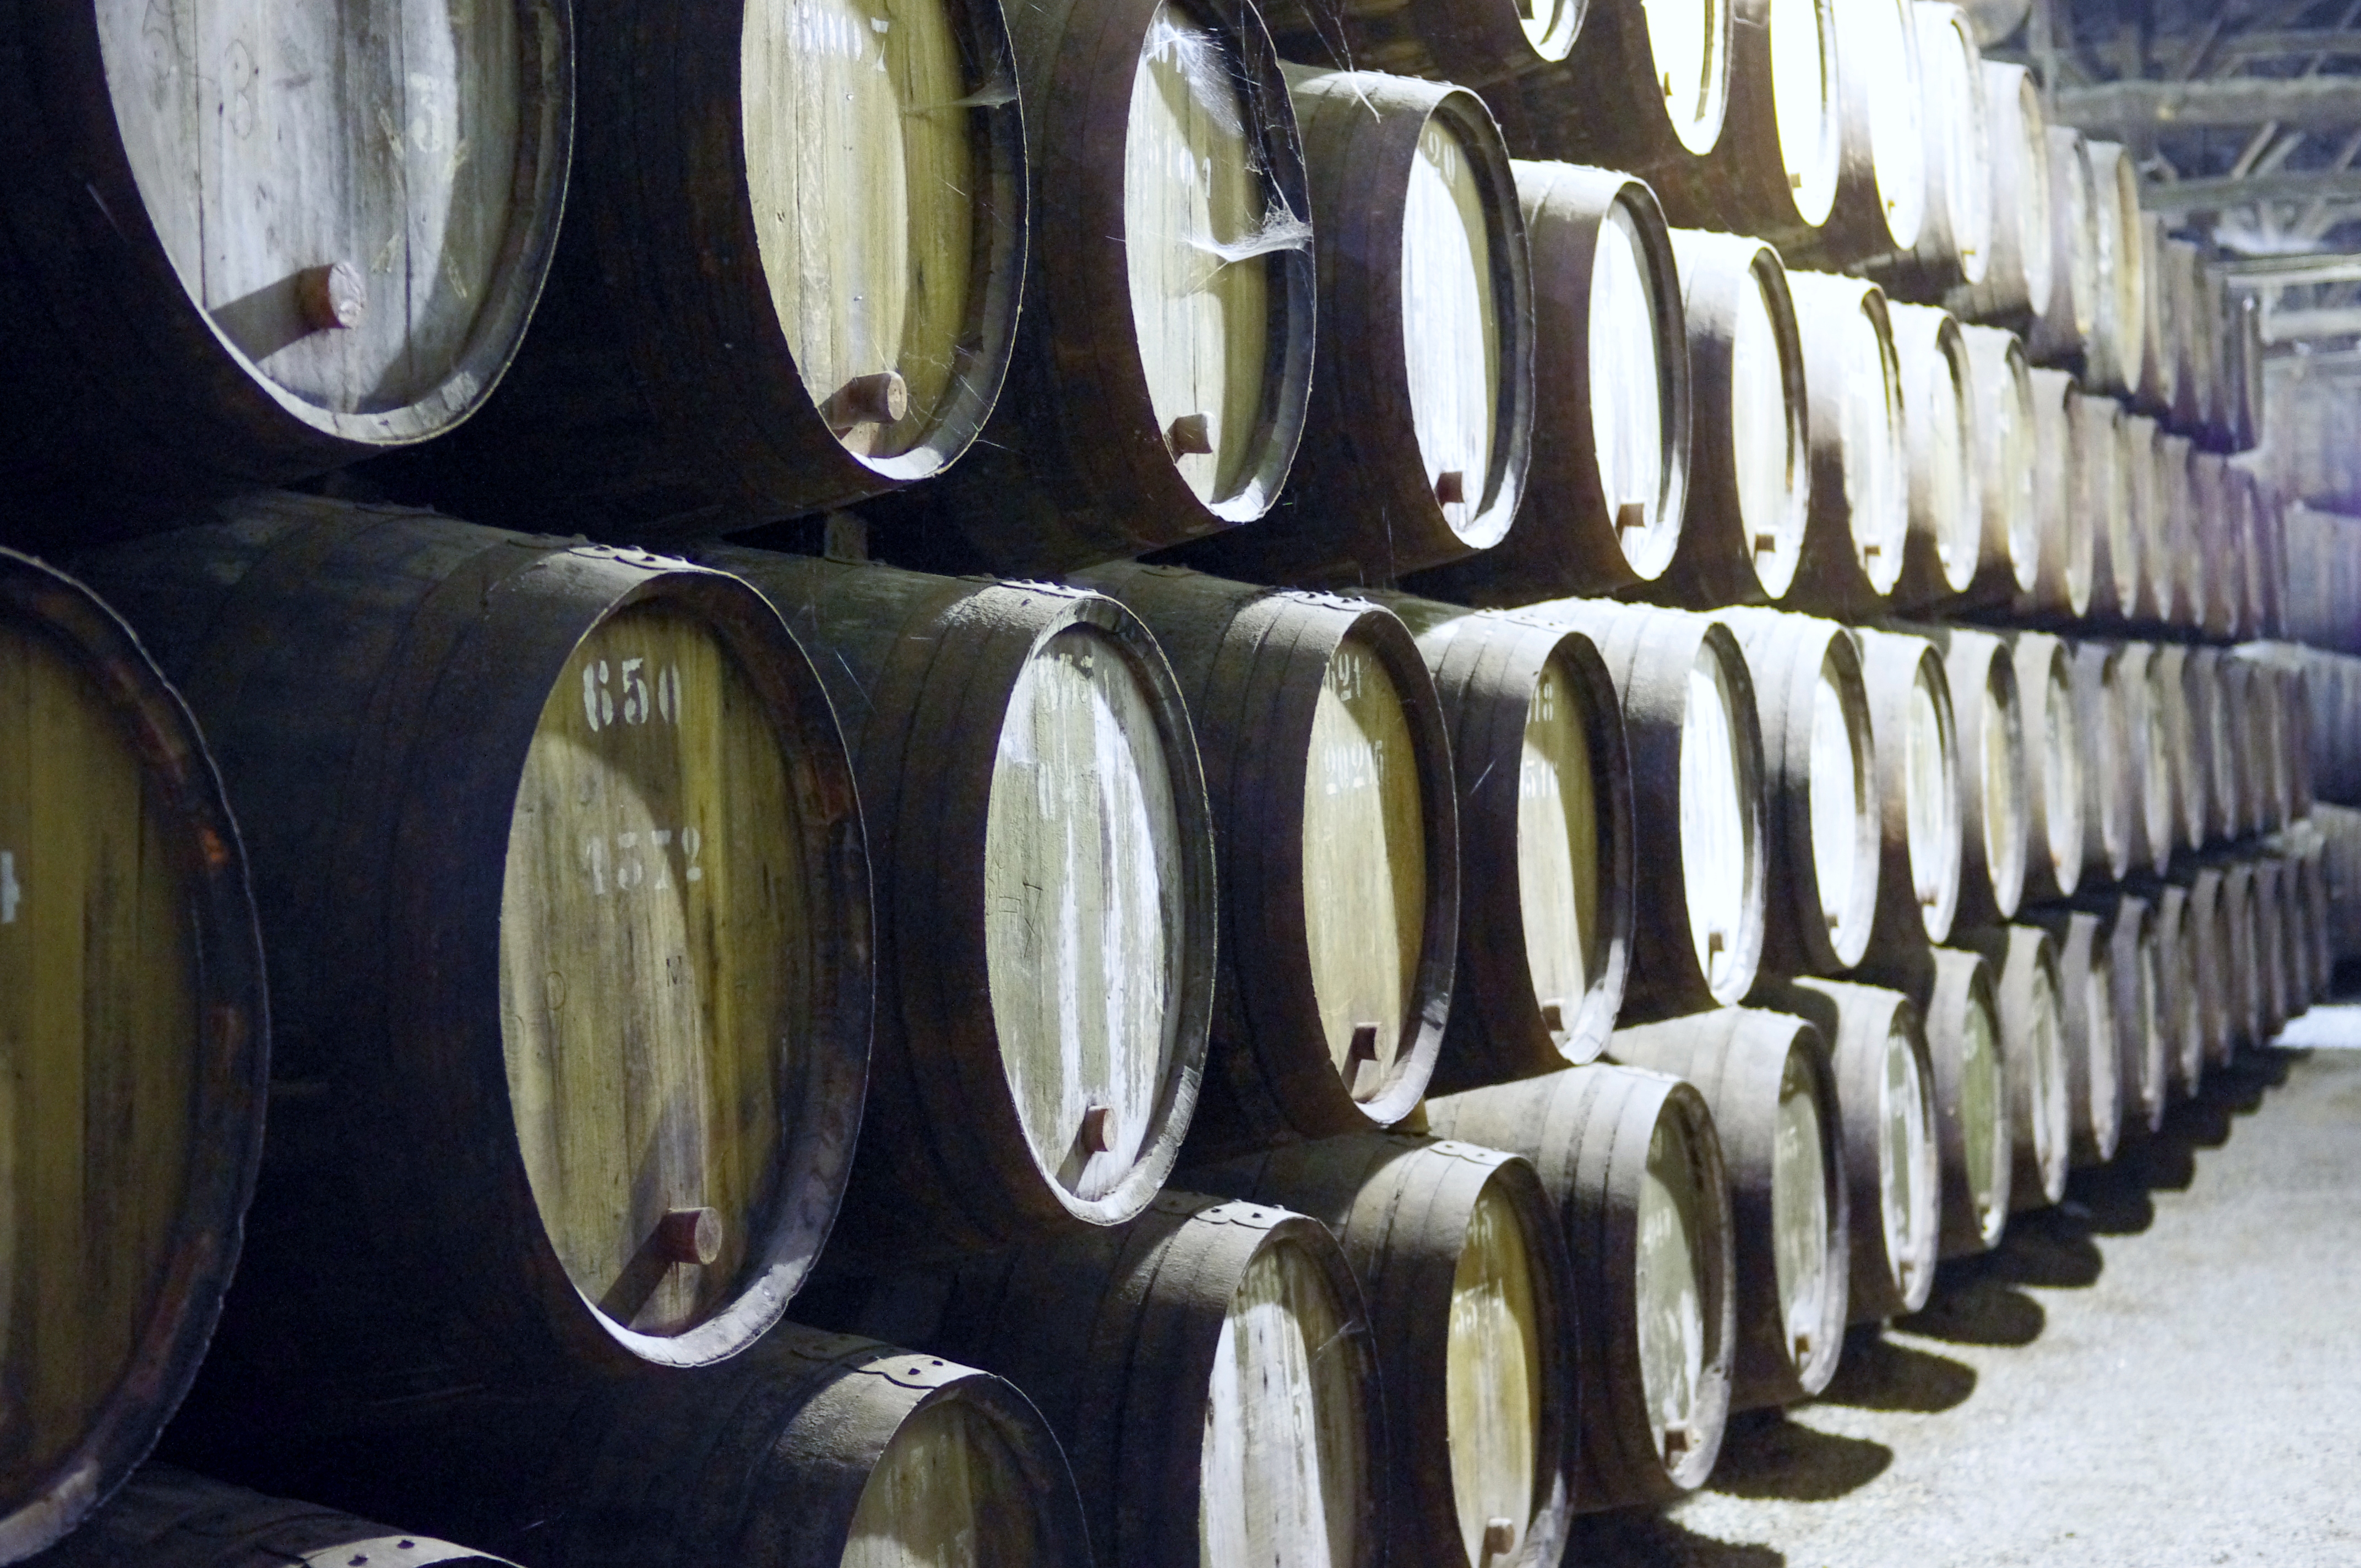 Port Wine Barrels at the Croft Warehouse in Nova Via de Gaia